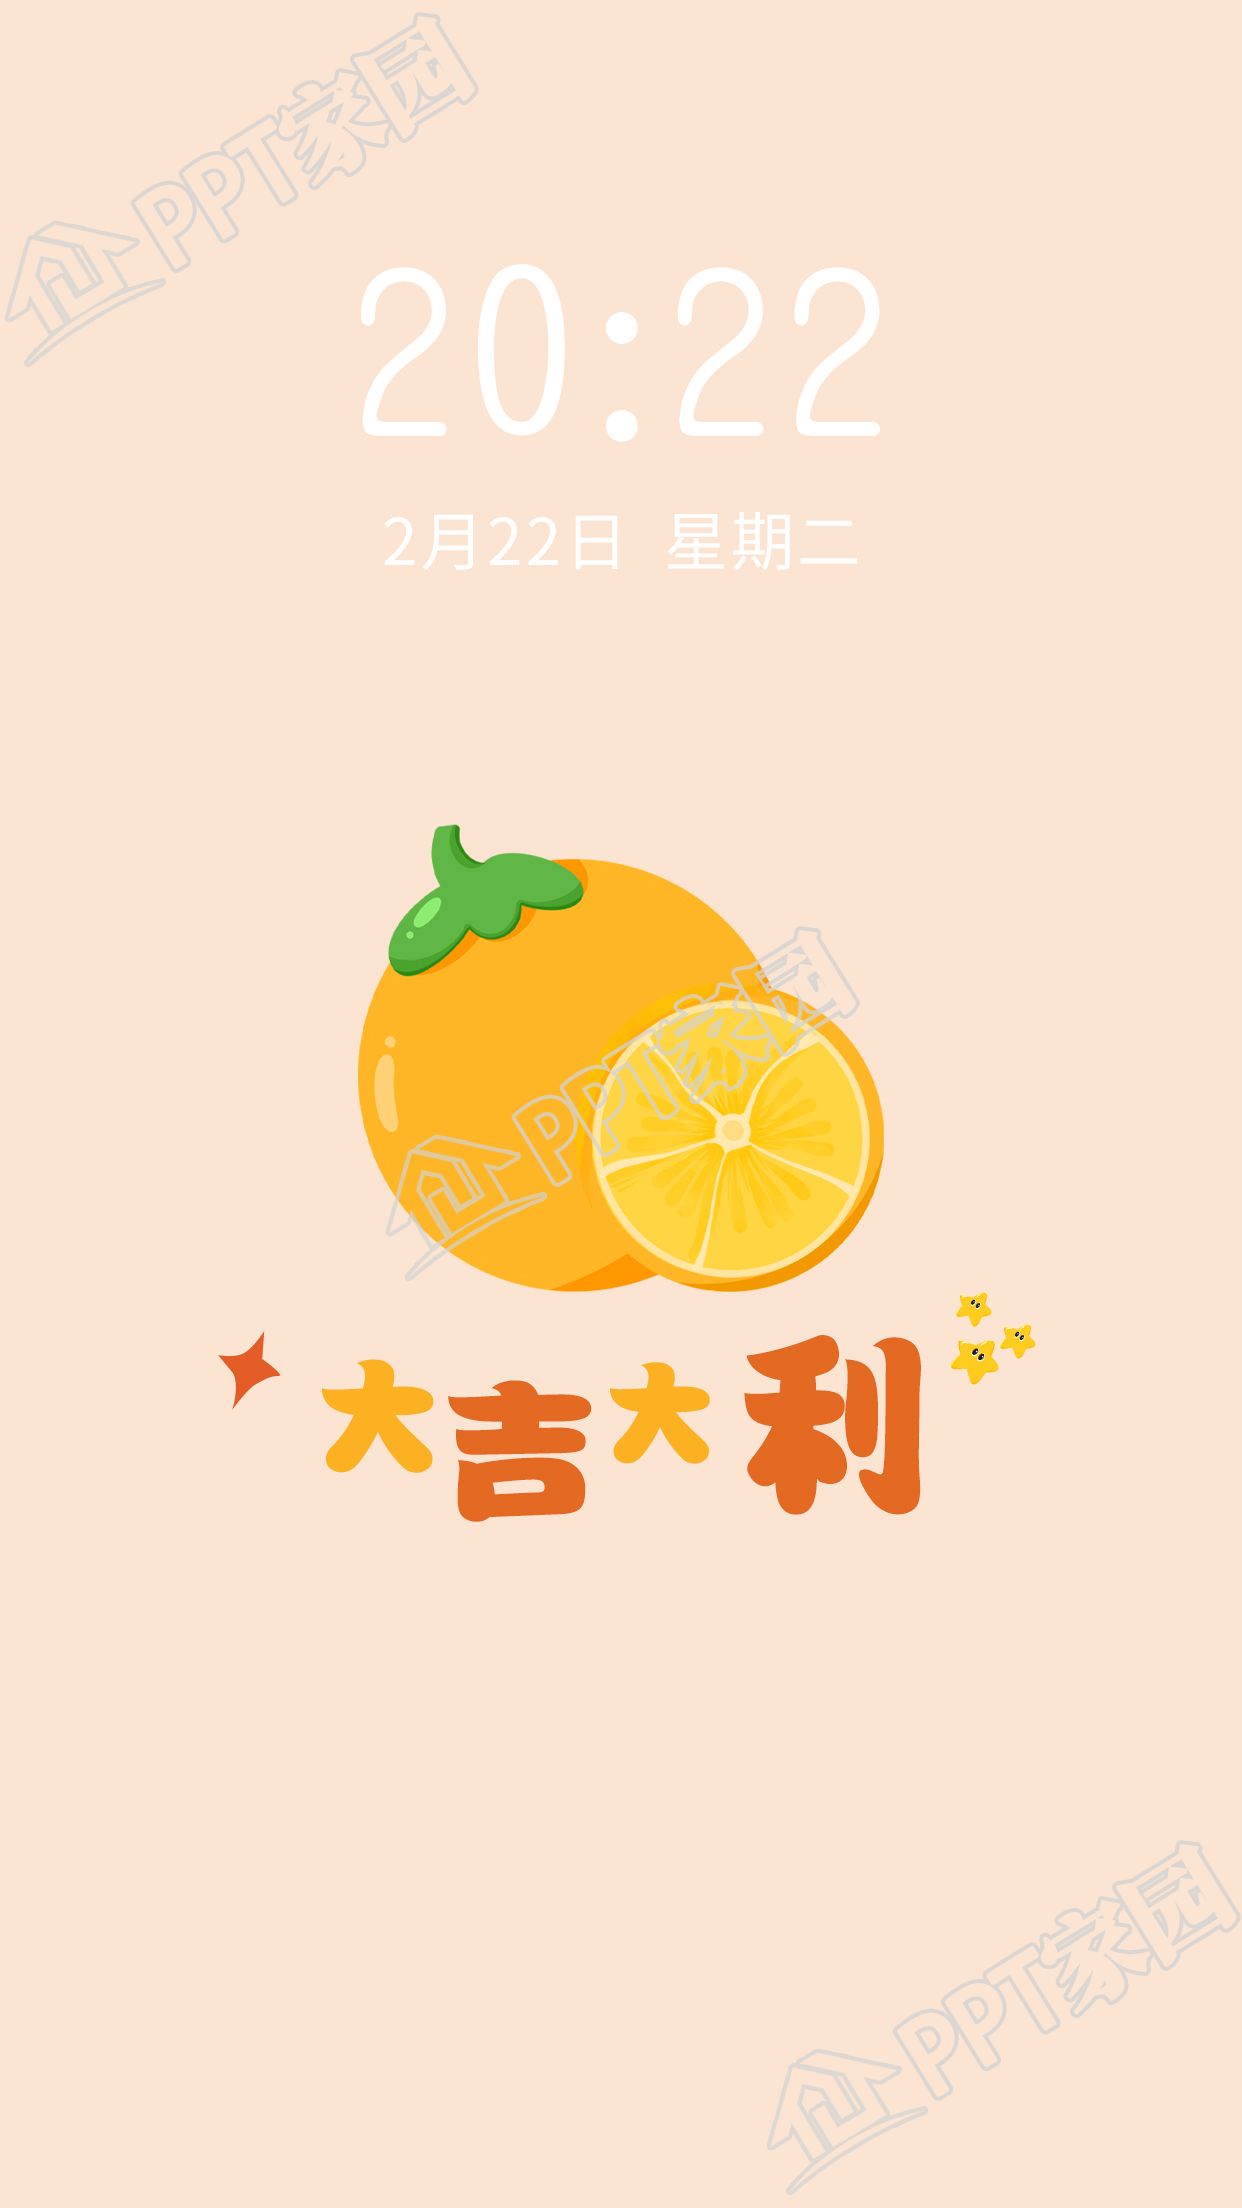 橘子水果主题大吉大利寓意手机壁纸